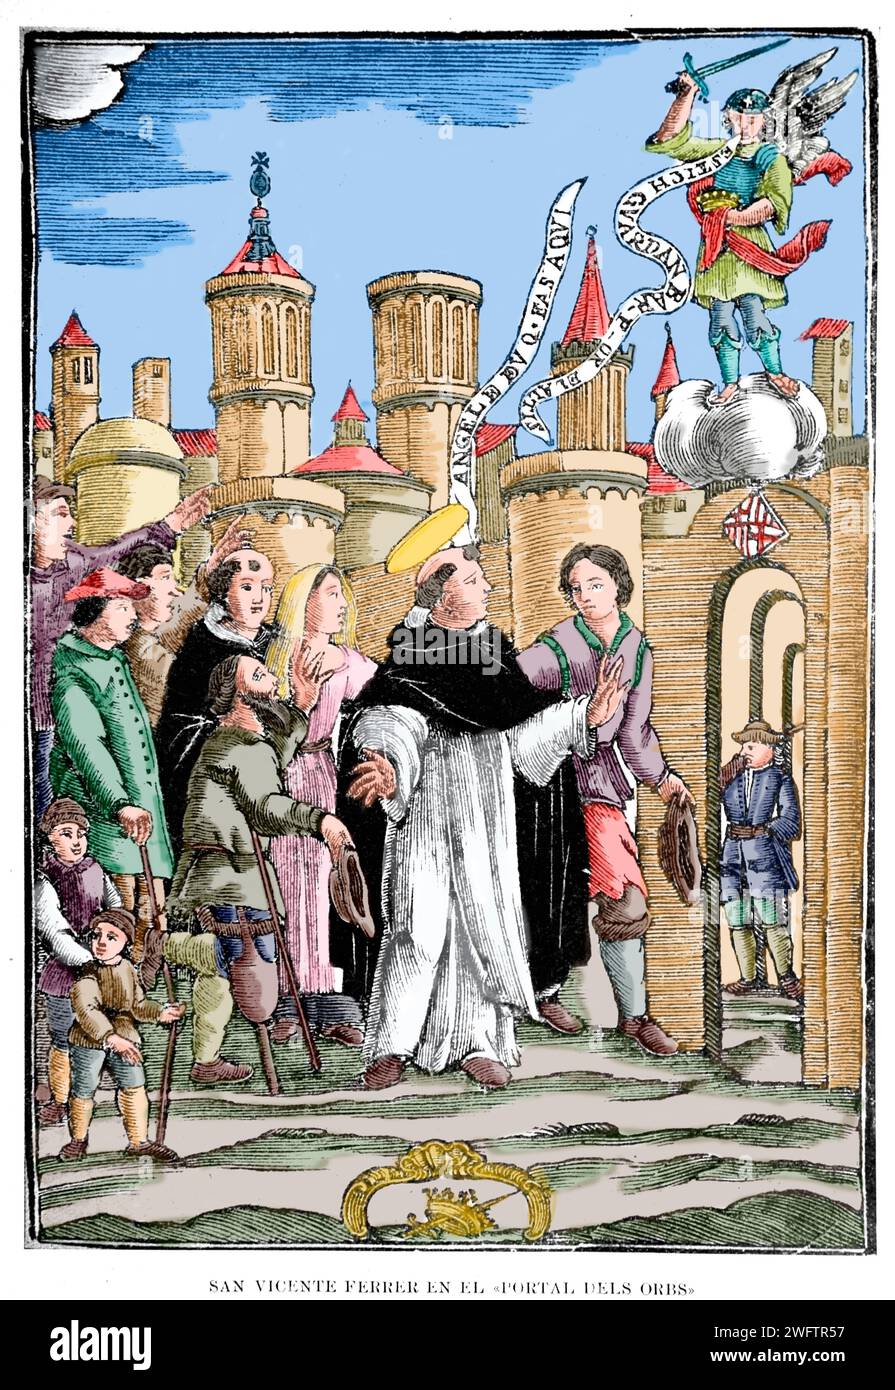 Spagna. Barcellona. Sain Vicente Ferrer in "Portal dels Obrs", 1398. Miracolo con l'apparenza di un angelo. Incisione. Foto Stock